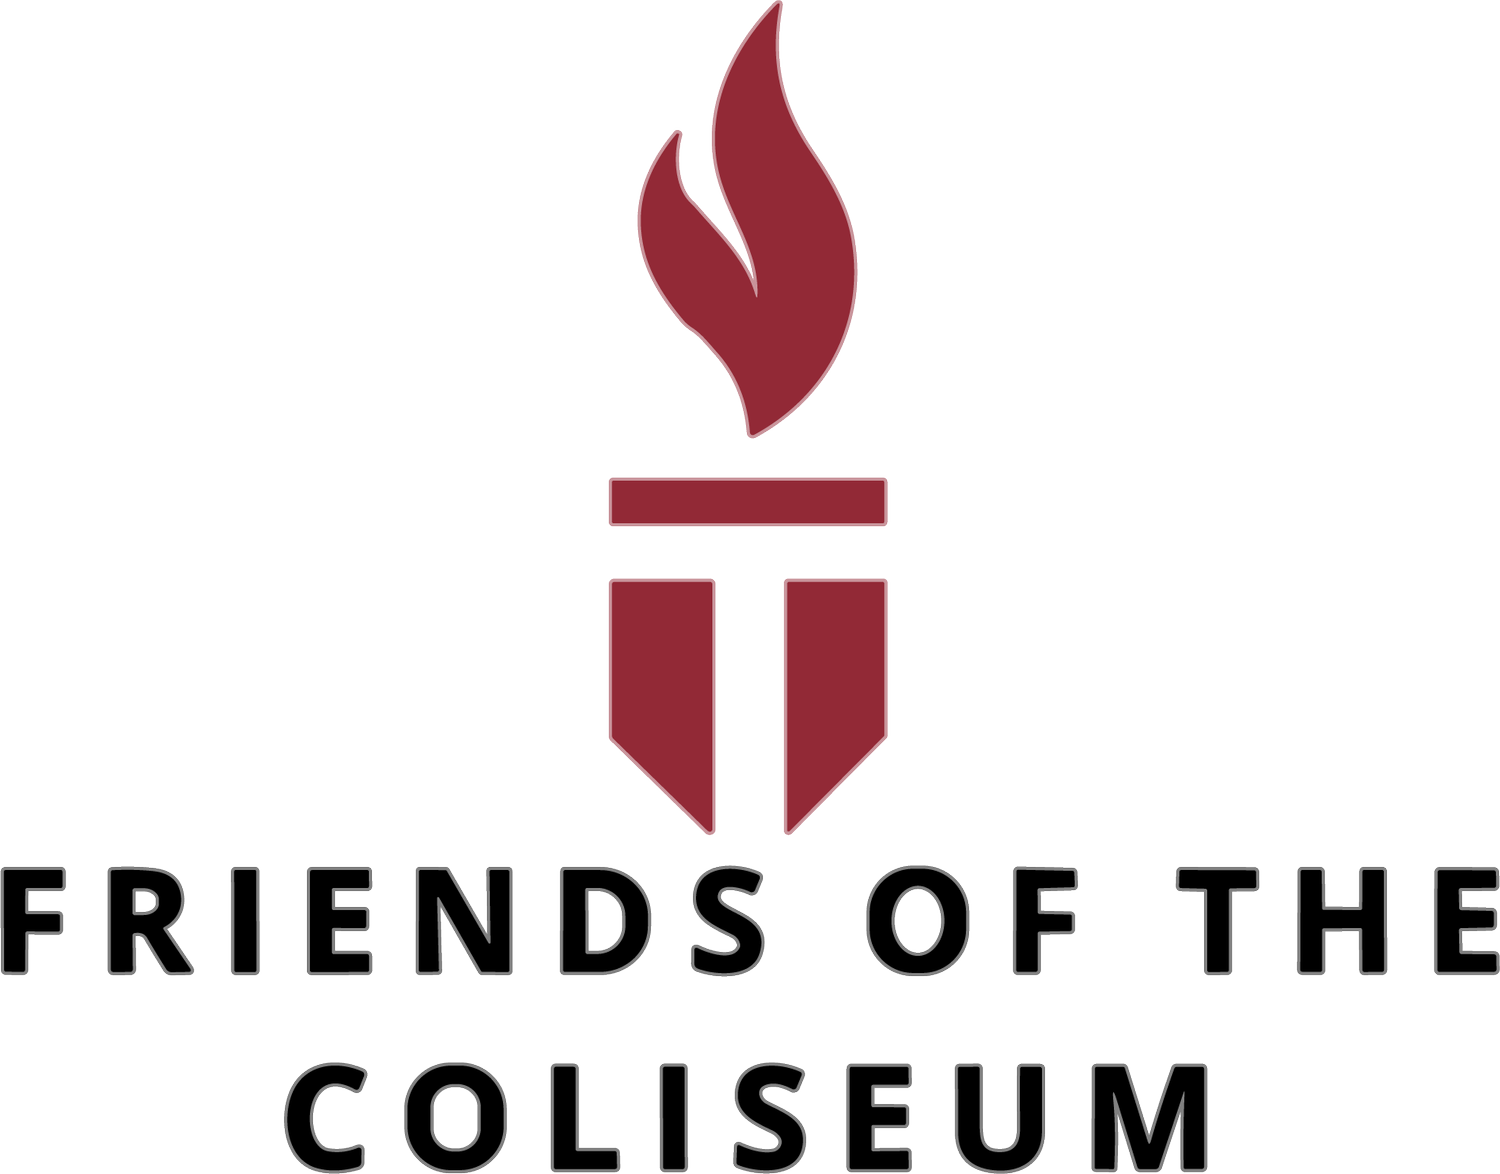 Friends of the Coliseum